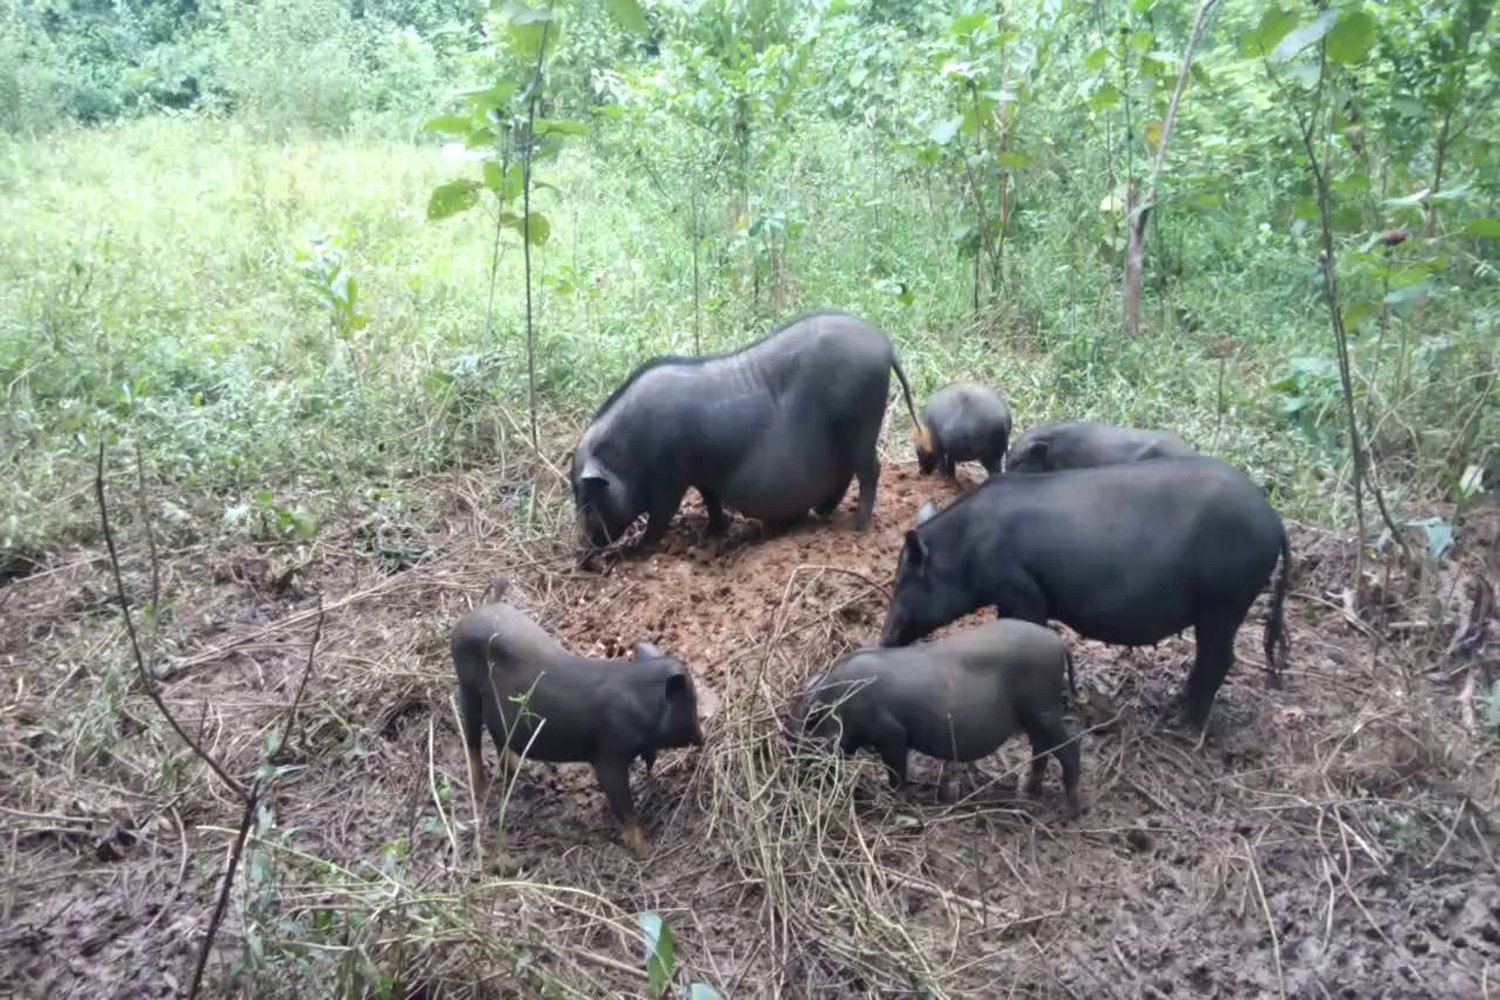 Thịt lợn cắp nách - Loại thịt rừng nhân tạo được tín đồ ẩm thực săn lùng 2